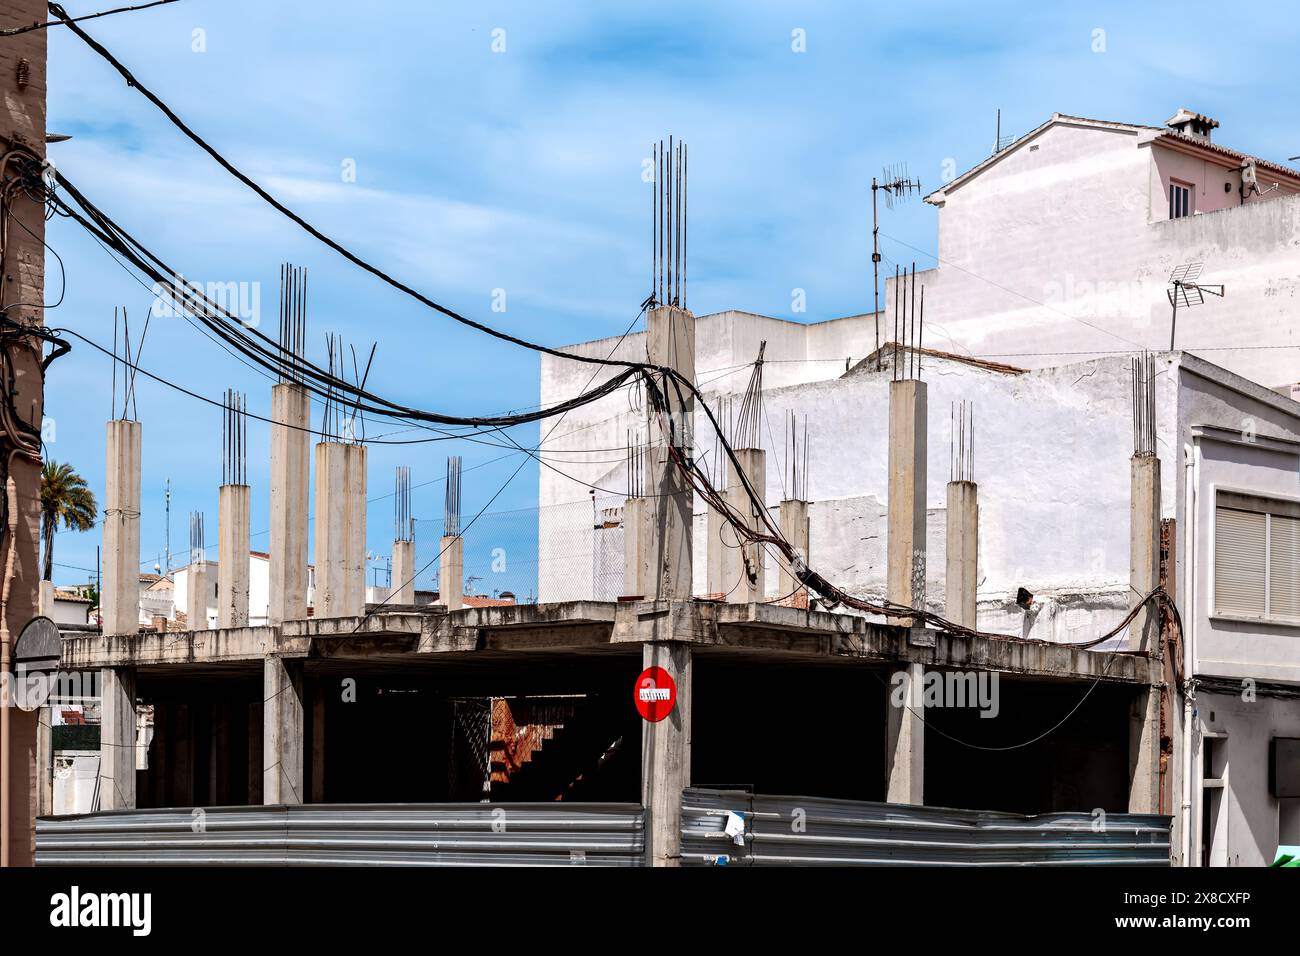 Chantier de construction en Espagne, piliers avec barres de fer visibles Banque D'Images